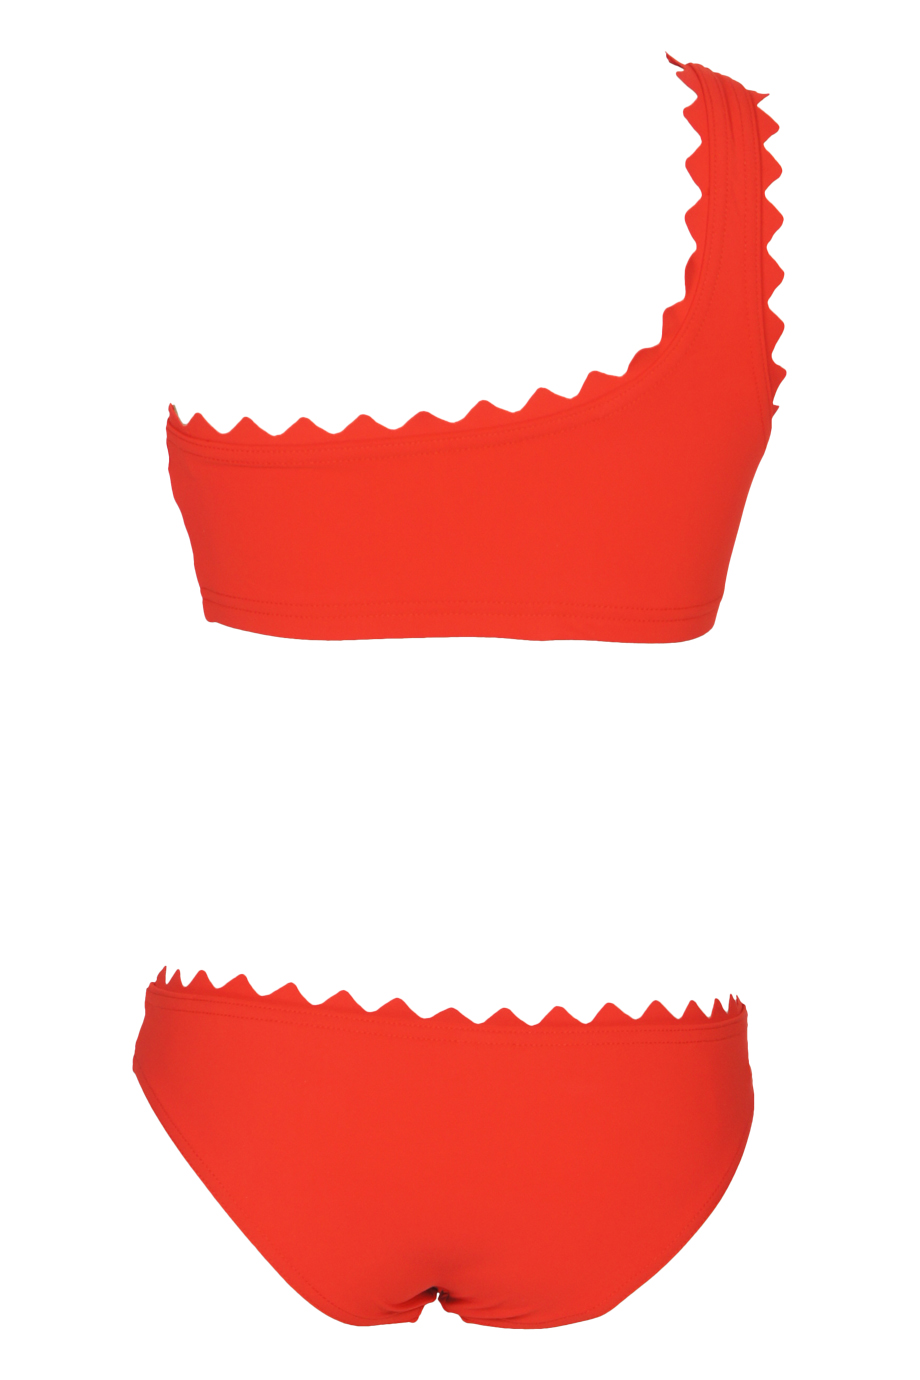 Ines Asymmetrischer Bikini Rot